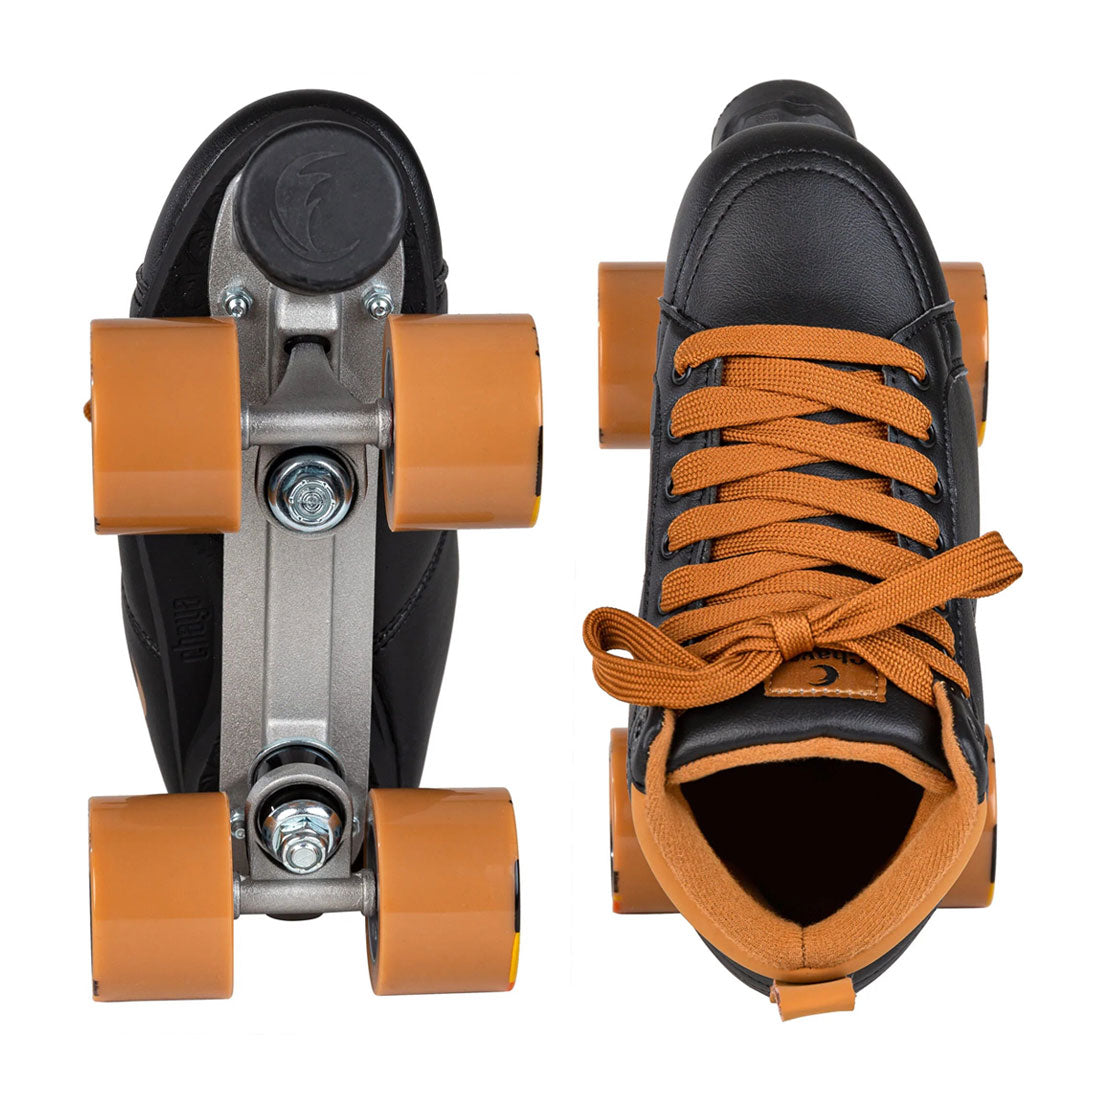 Chaya Vintage Skate - Mocha Roller Skates